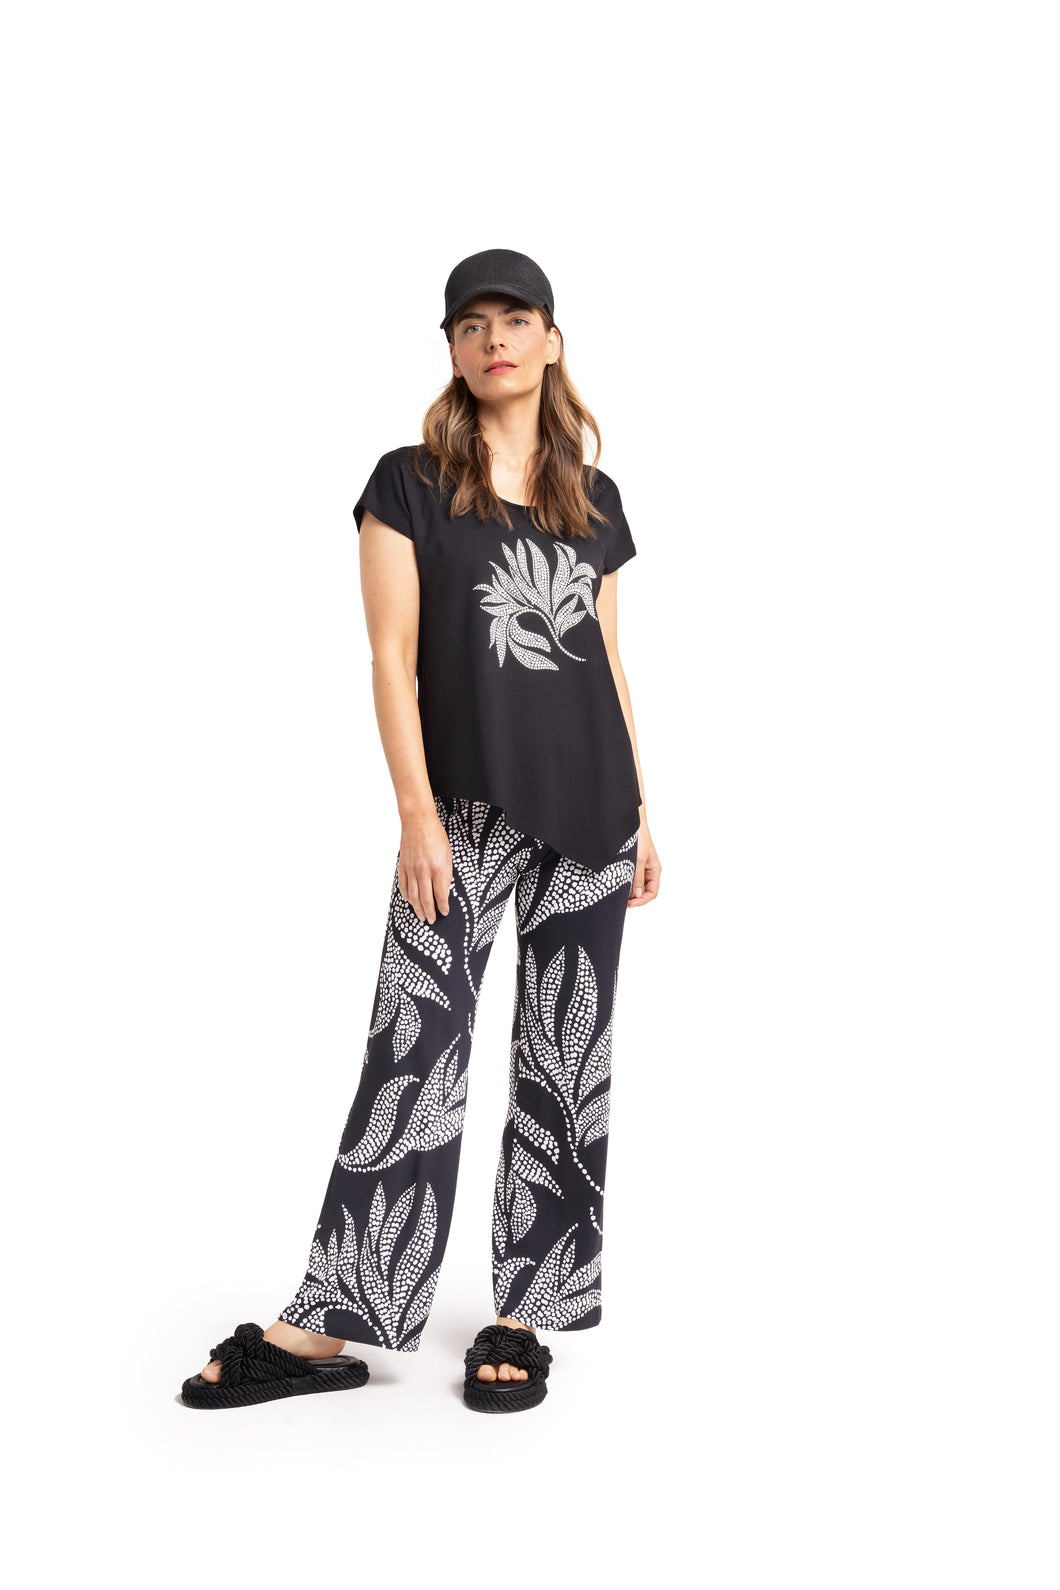 Doris Streich T-Shirt mit Blätter-Motiv aus Metallplättchen asymmetrischem Saum und kurzem Arm Gr 48 50 54